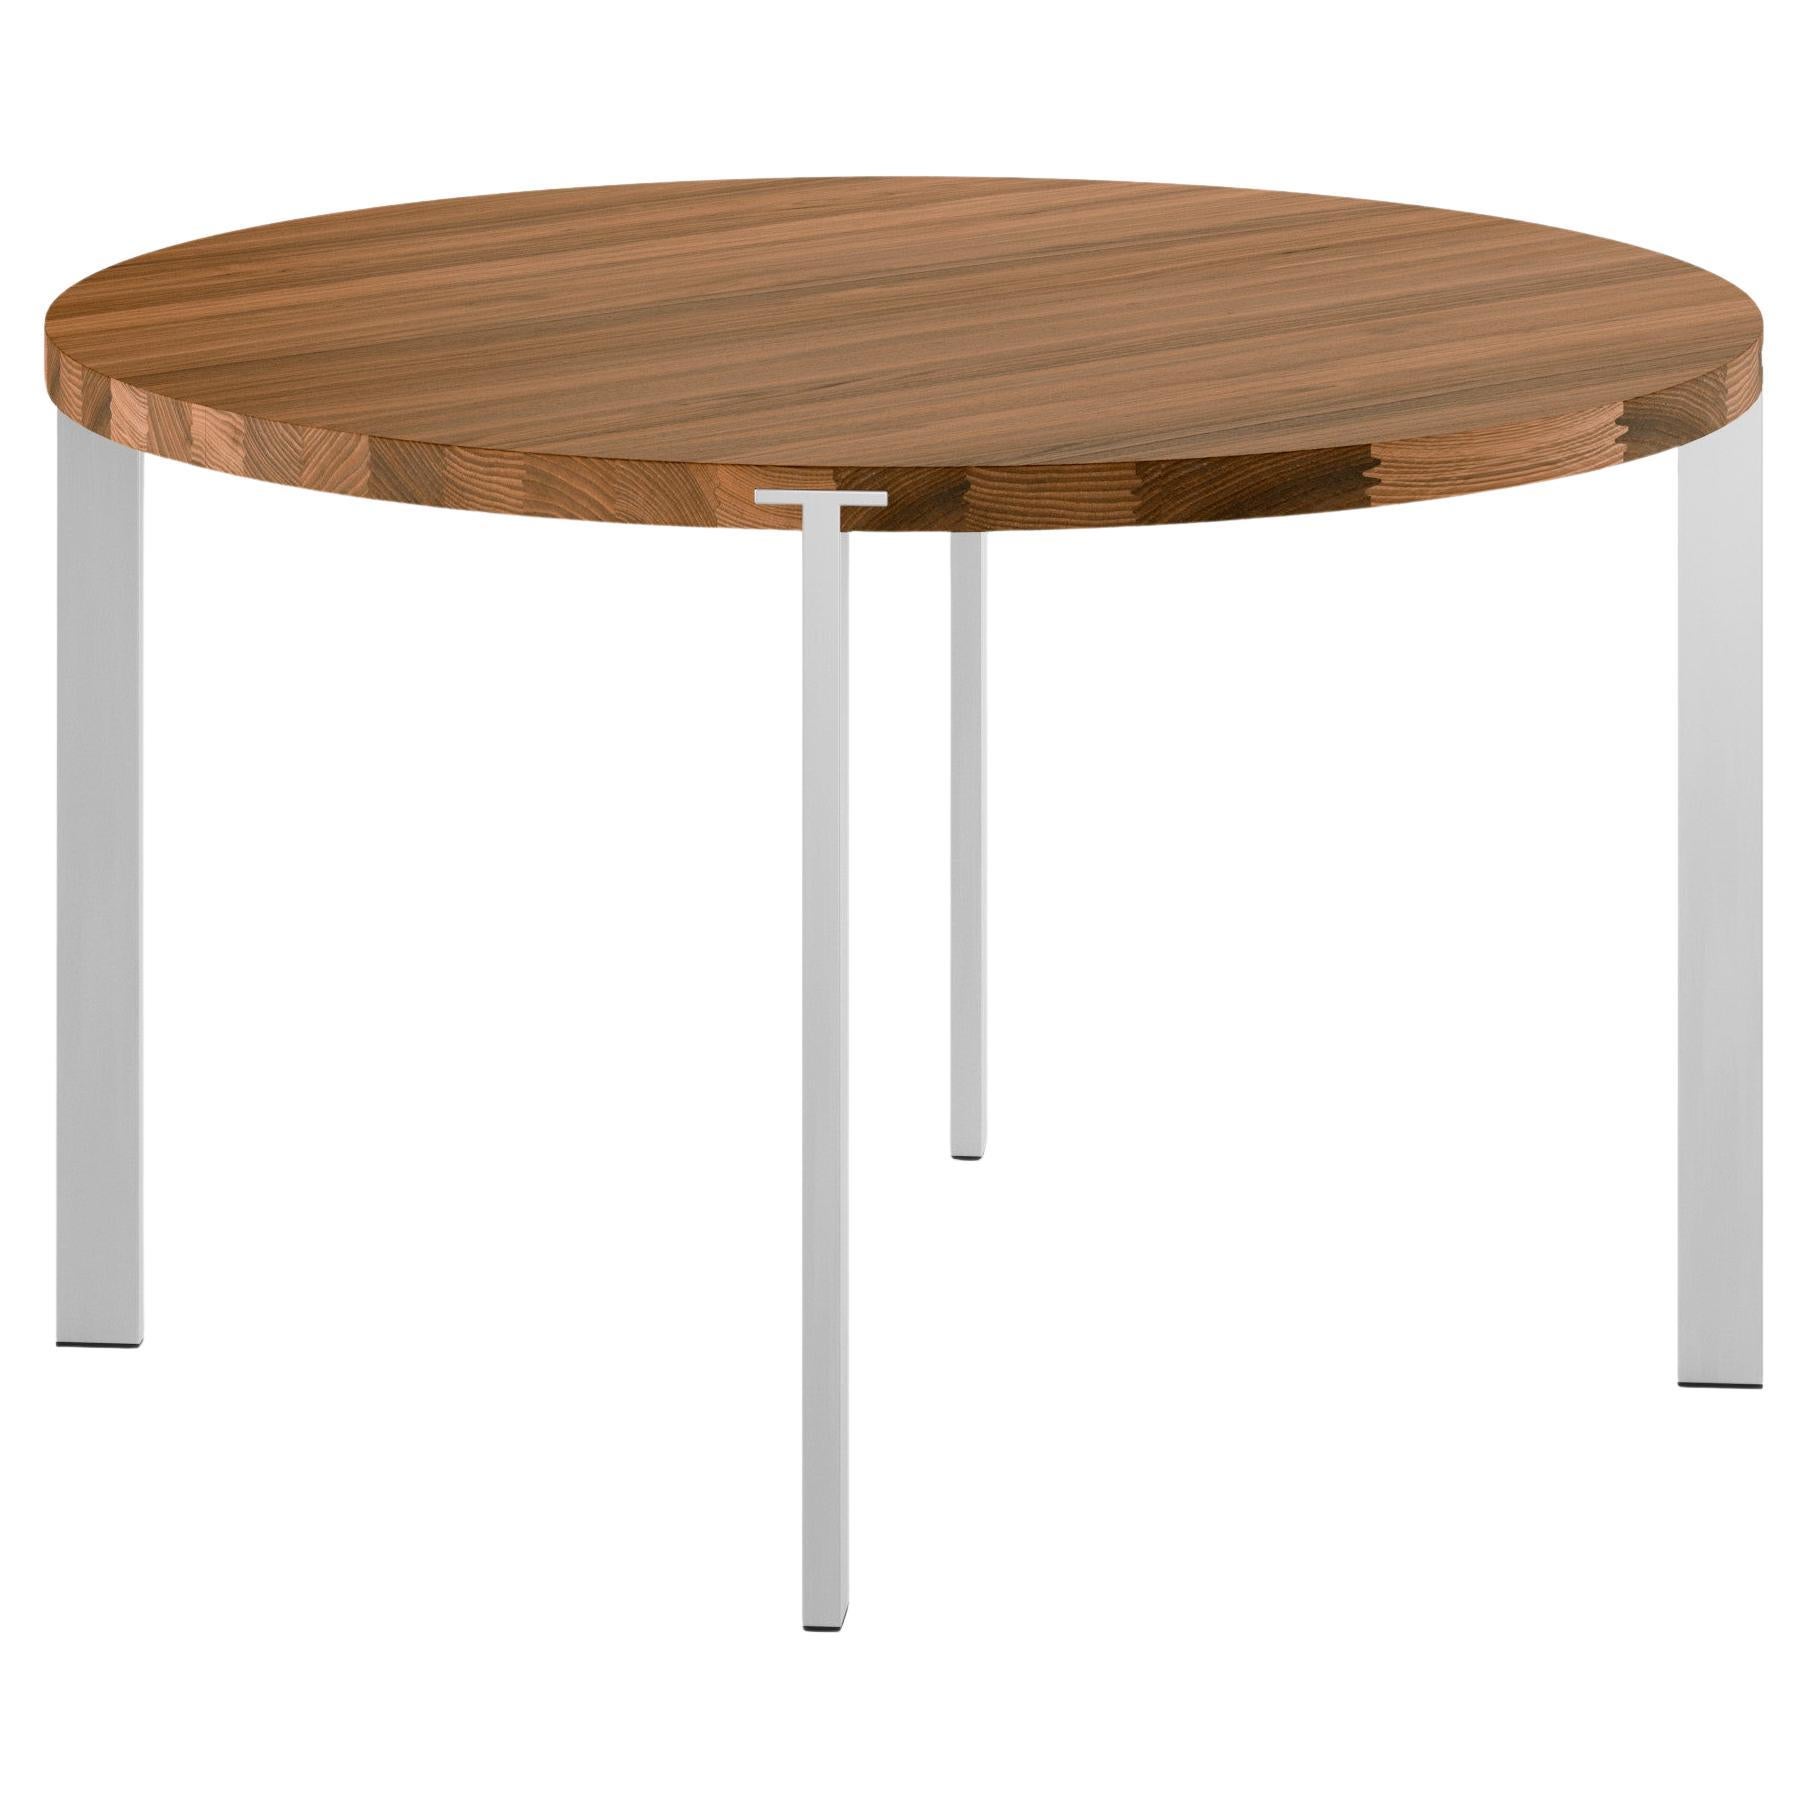 Table ronde GM2100, noyer - Design by Nissen & Gehl MDD